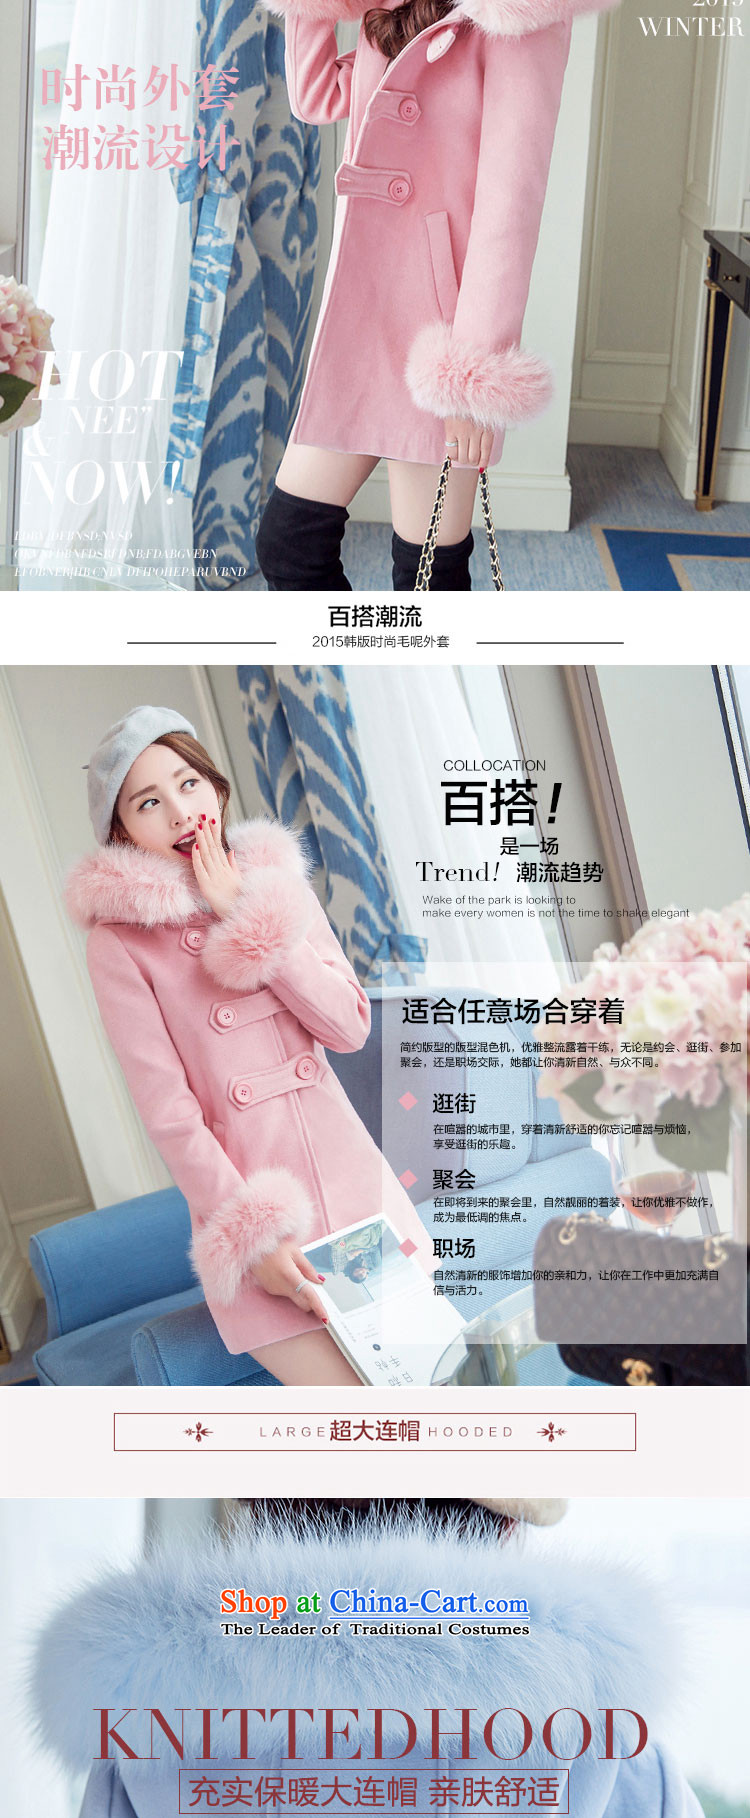 Champs billion Land 2015 Autumn new gross coats female hair? for Pocket Korean female jacket is 